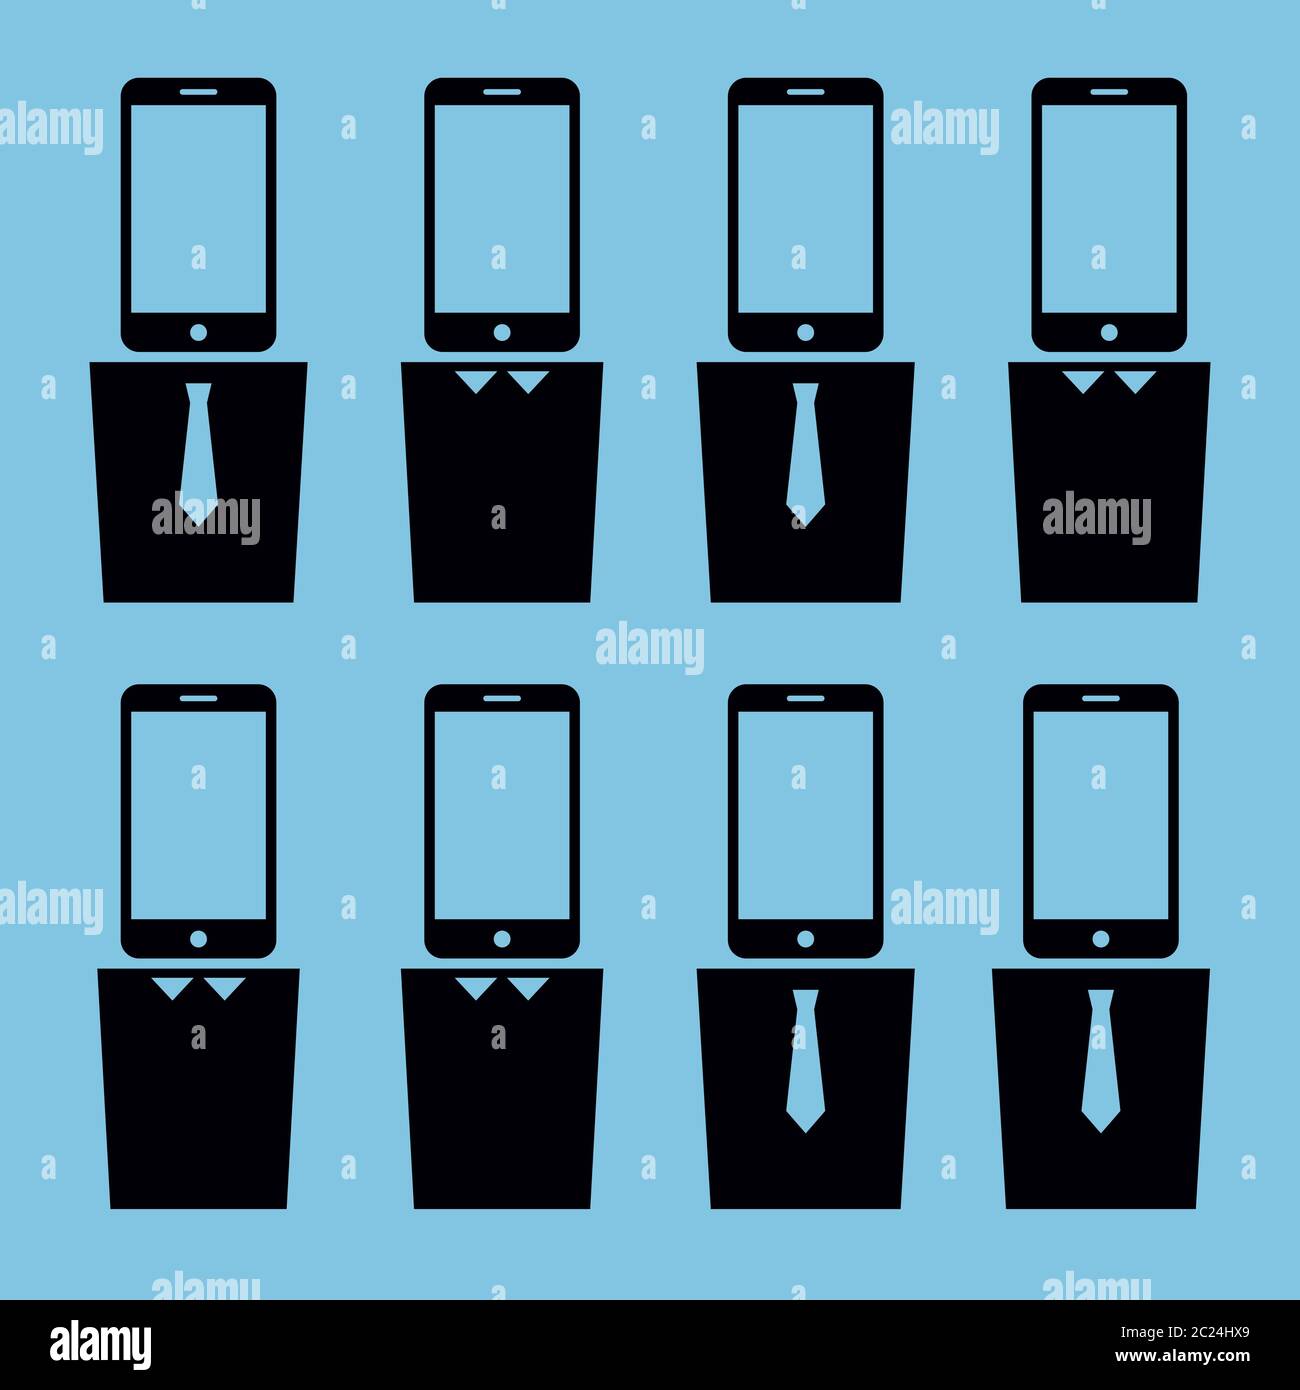 Vector vereinfachte Illustration zum Thema Technologieabhängigkeit. Acht Ikonen von Menschen mit Smartphones statt Kopf. Schwarze Piktogramme o Stock Vektor